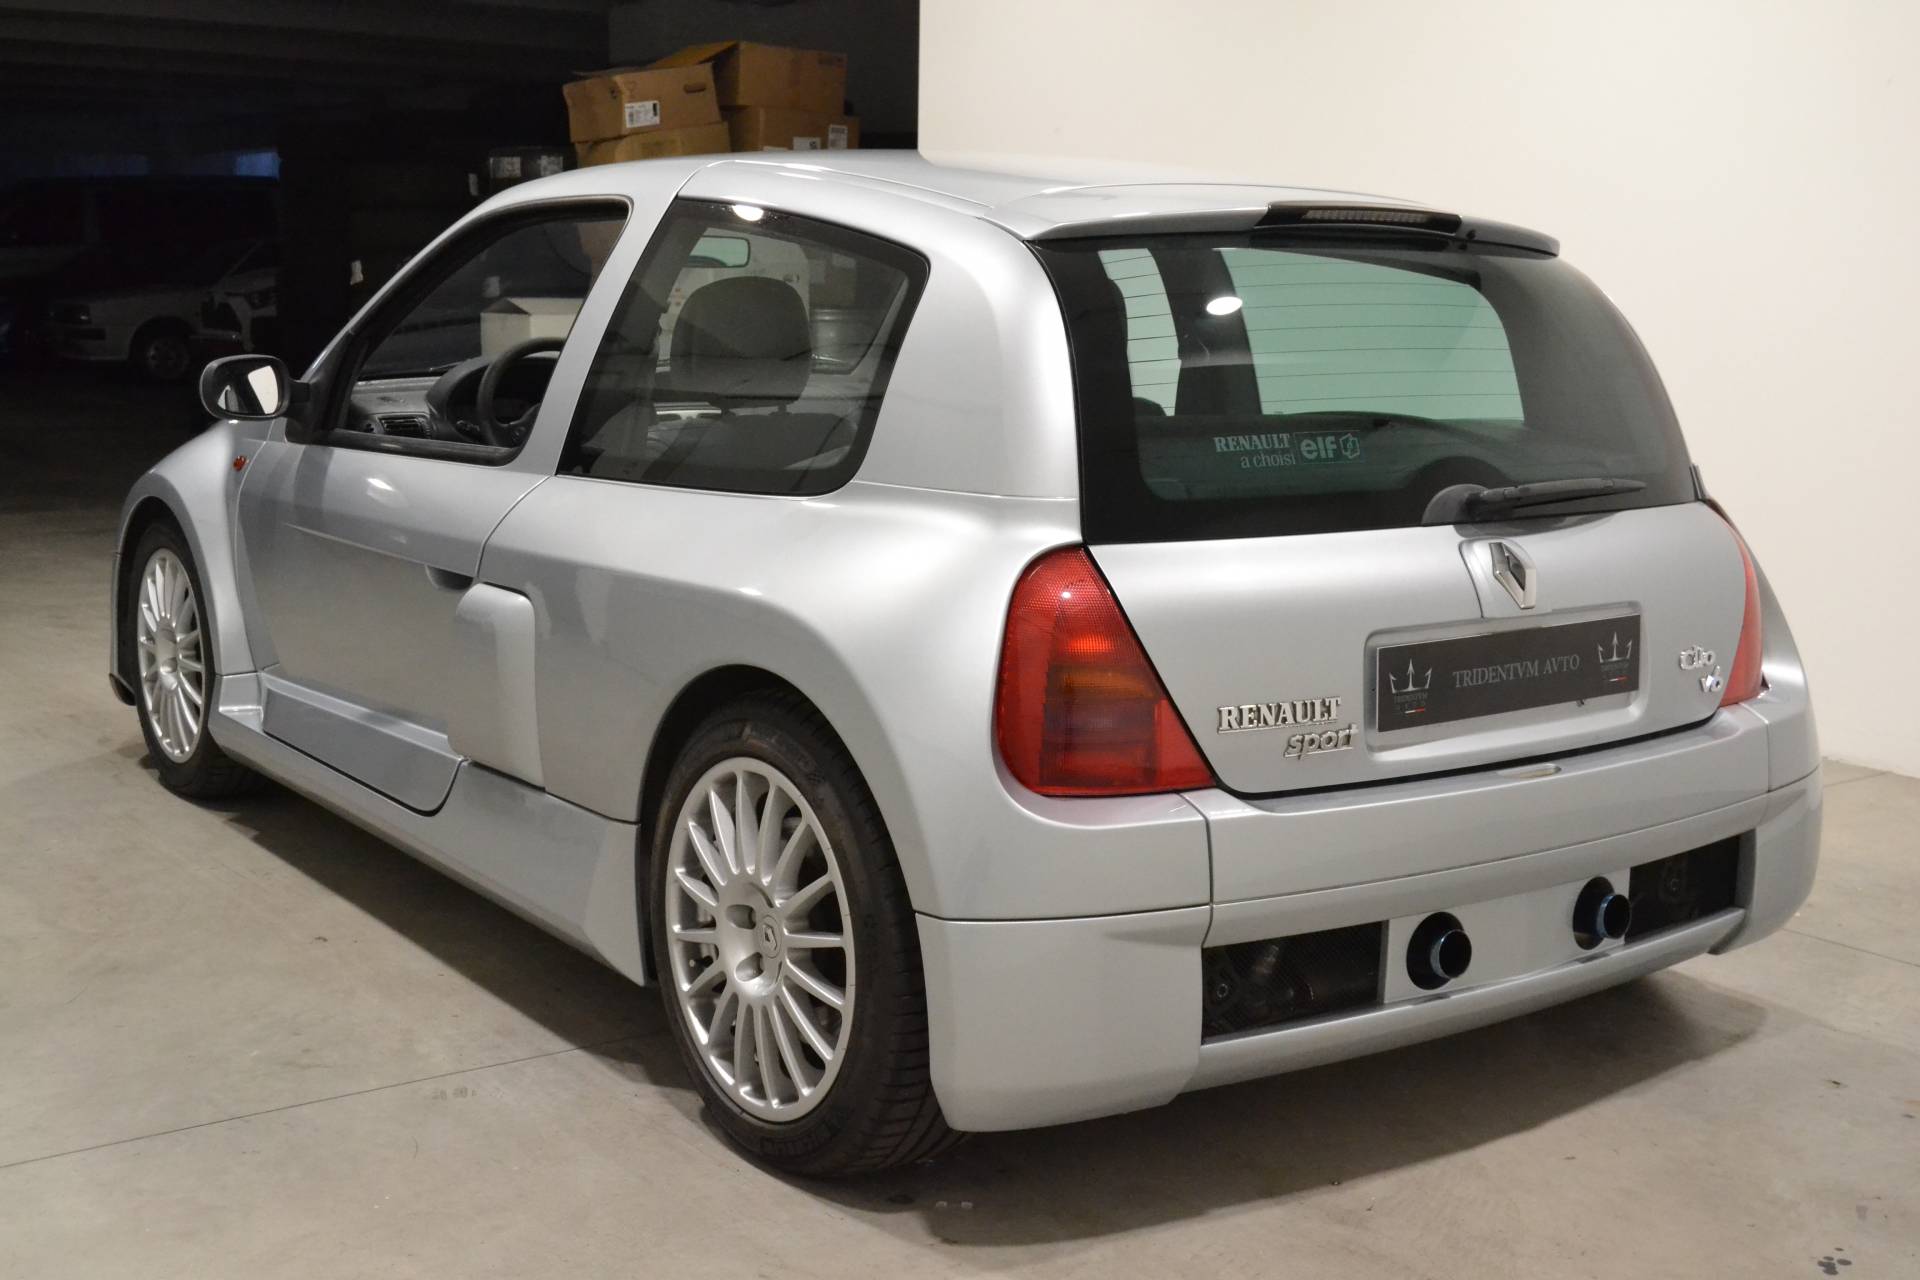 Te koop: Renault Clio II V6 (2002) aangeboden voor €